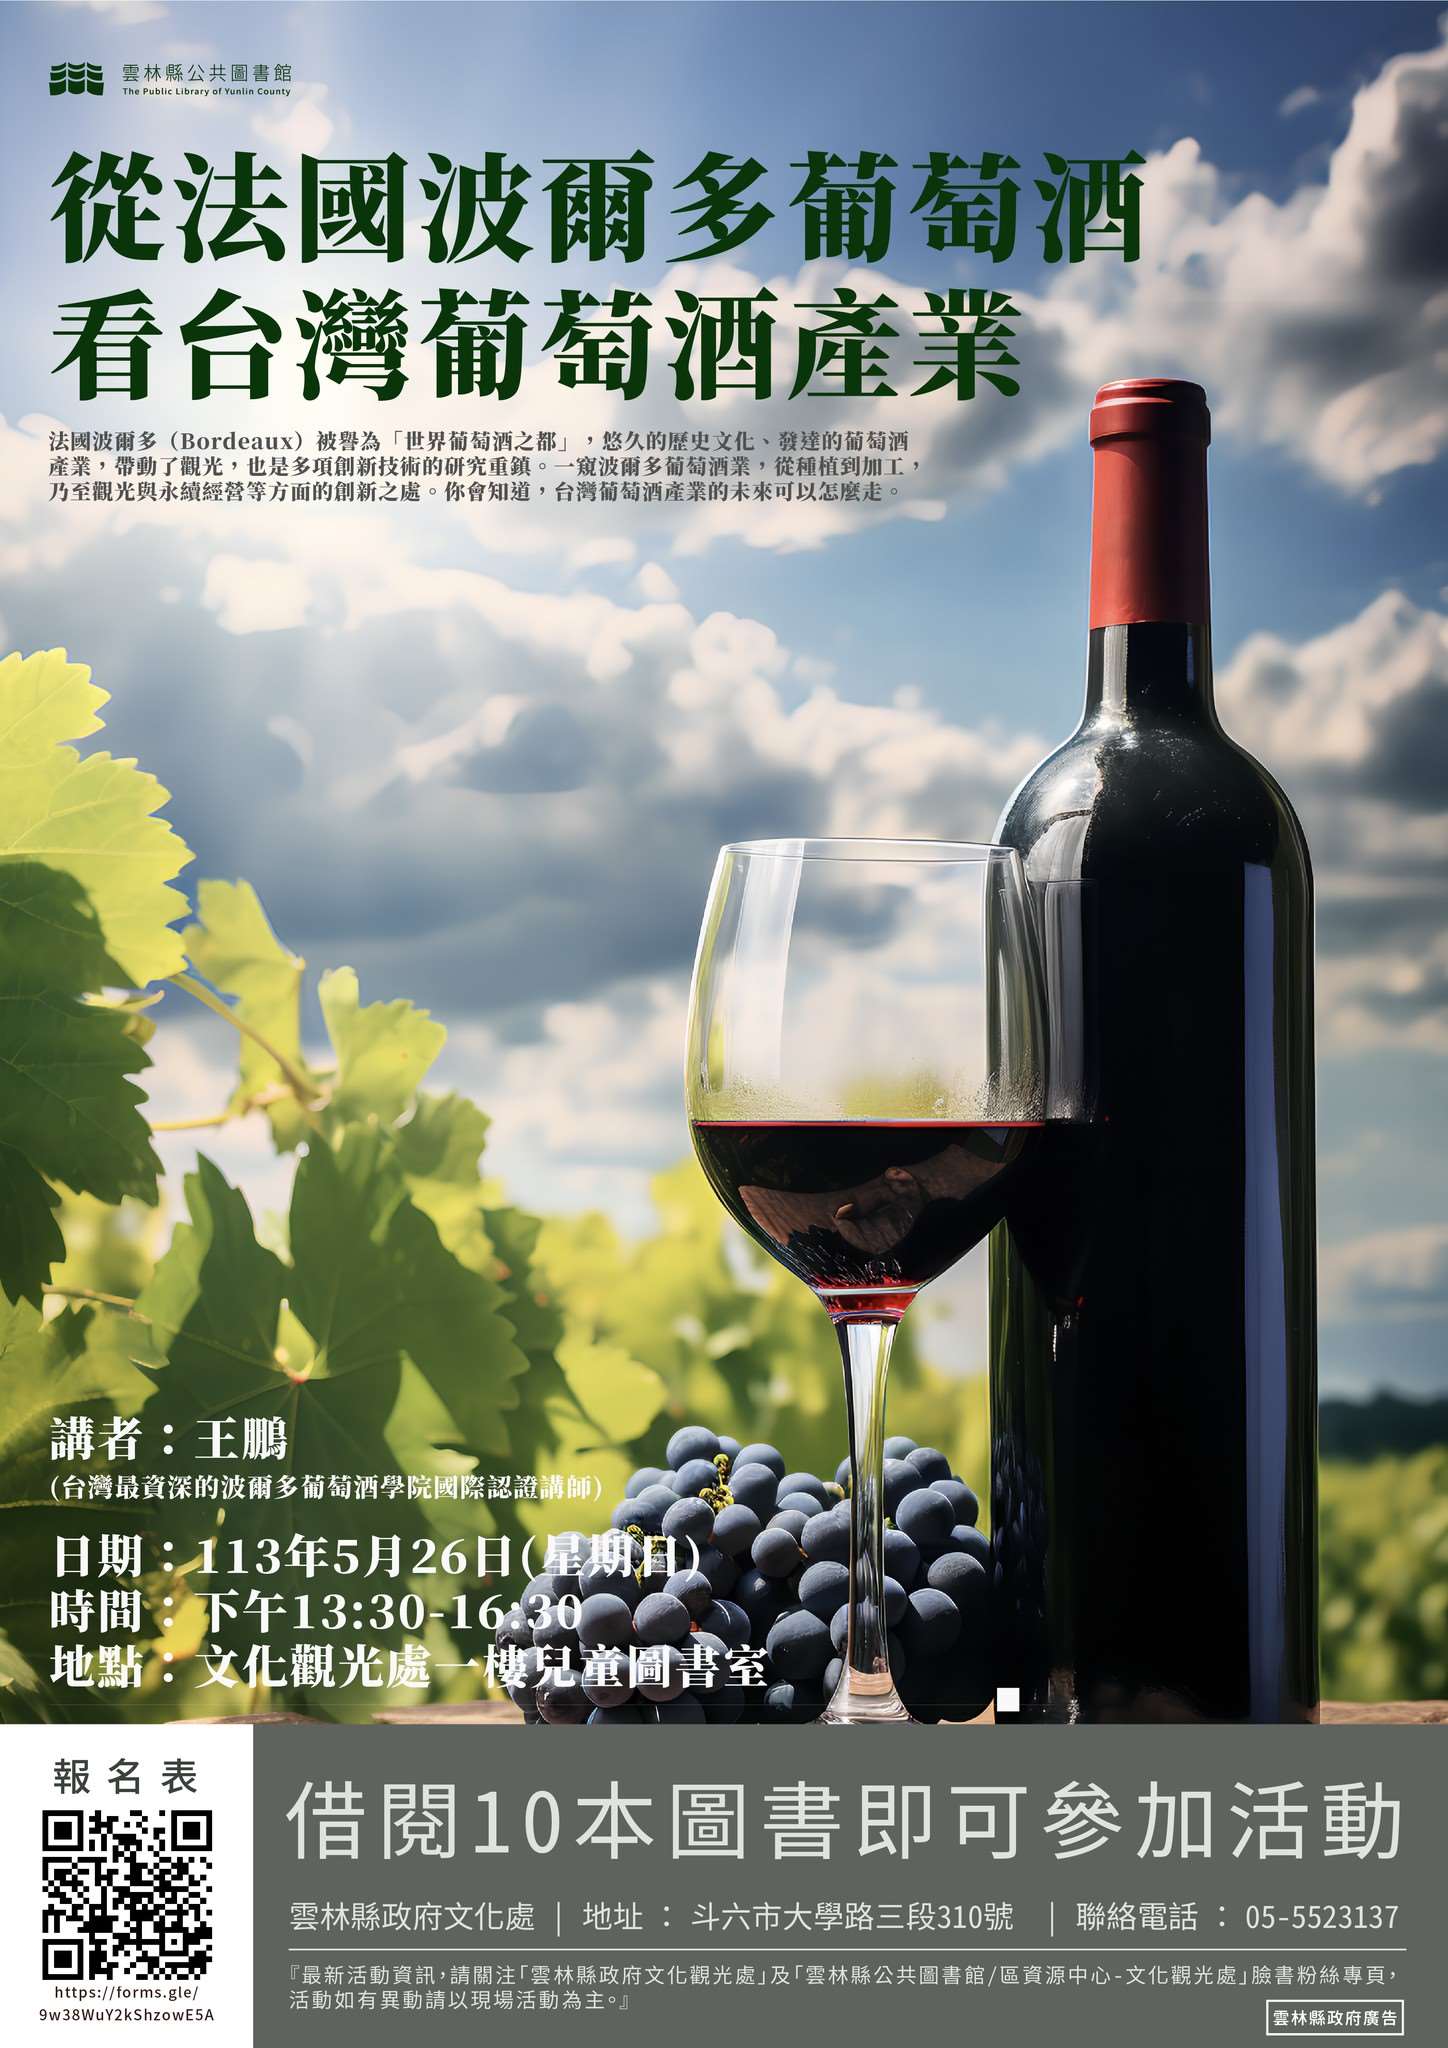 「從法國波爾多葡萄酒看台灣葡萄酒產業」講座圖片